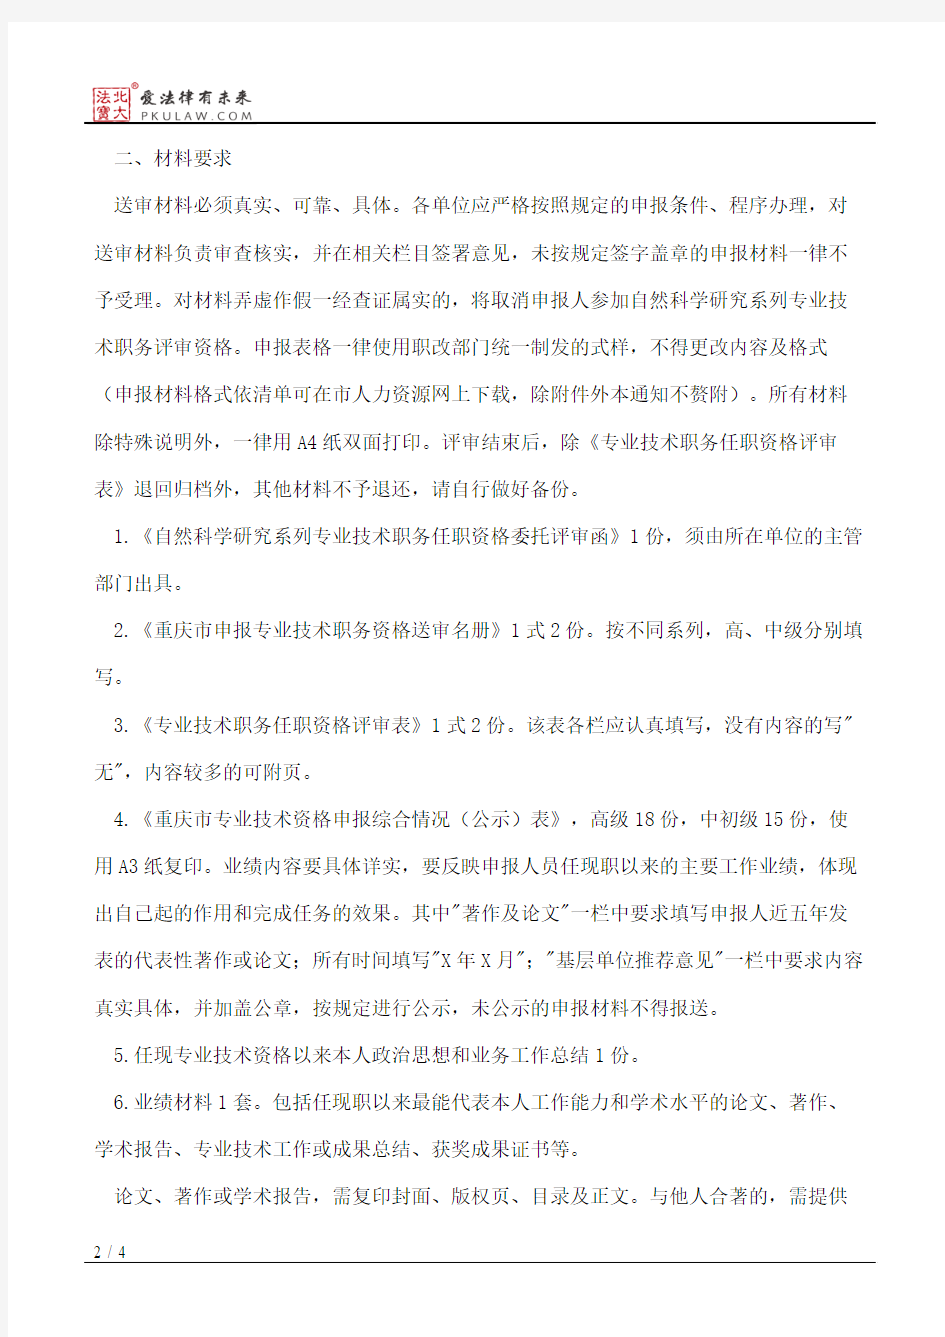 重庆市科学技术委员会关于开展2013年度自然科学研究系列专业技术